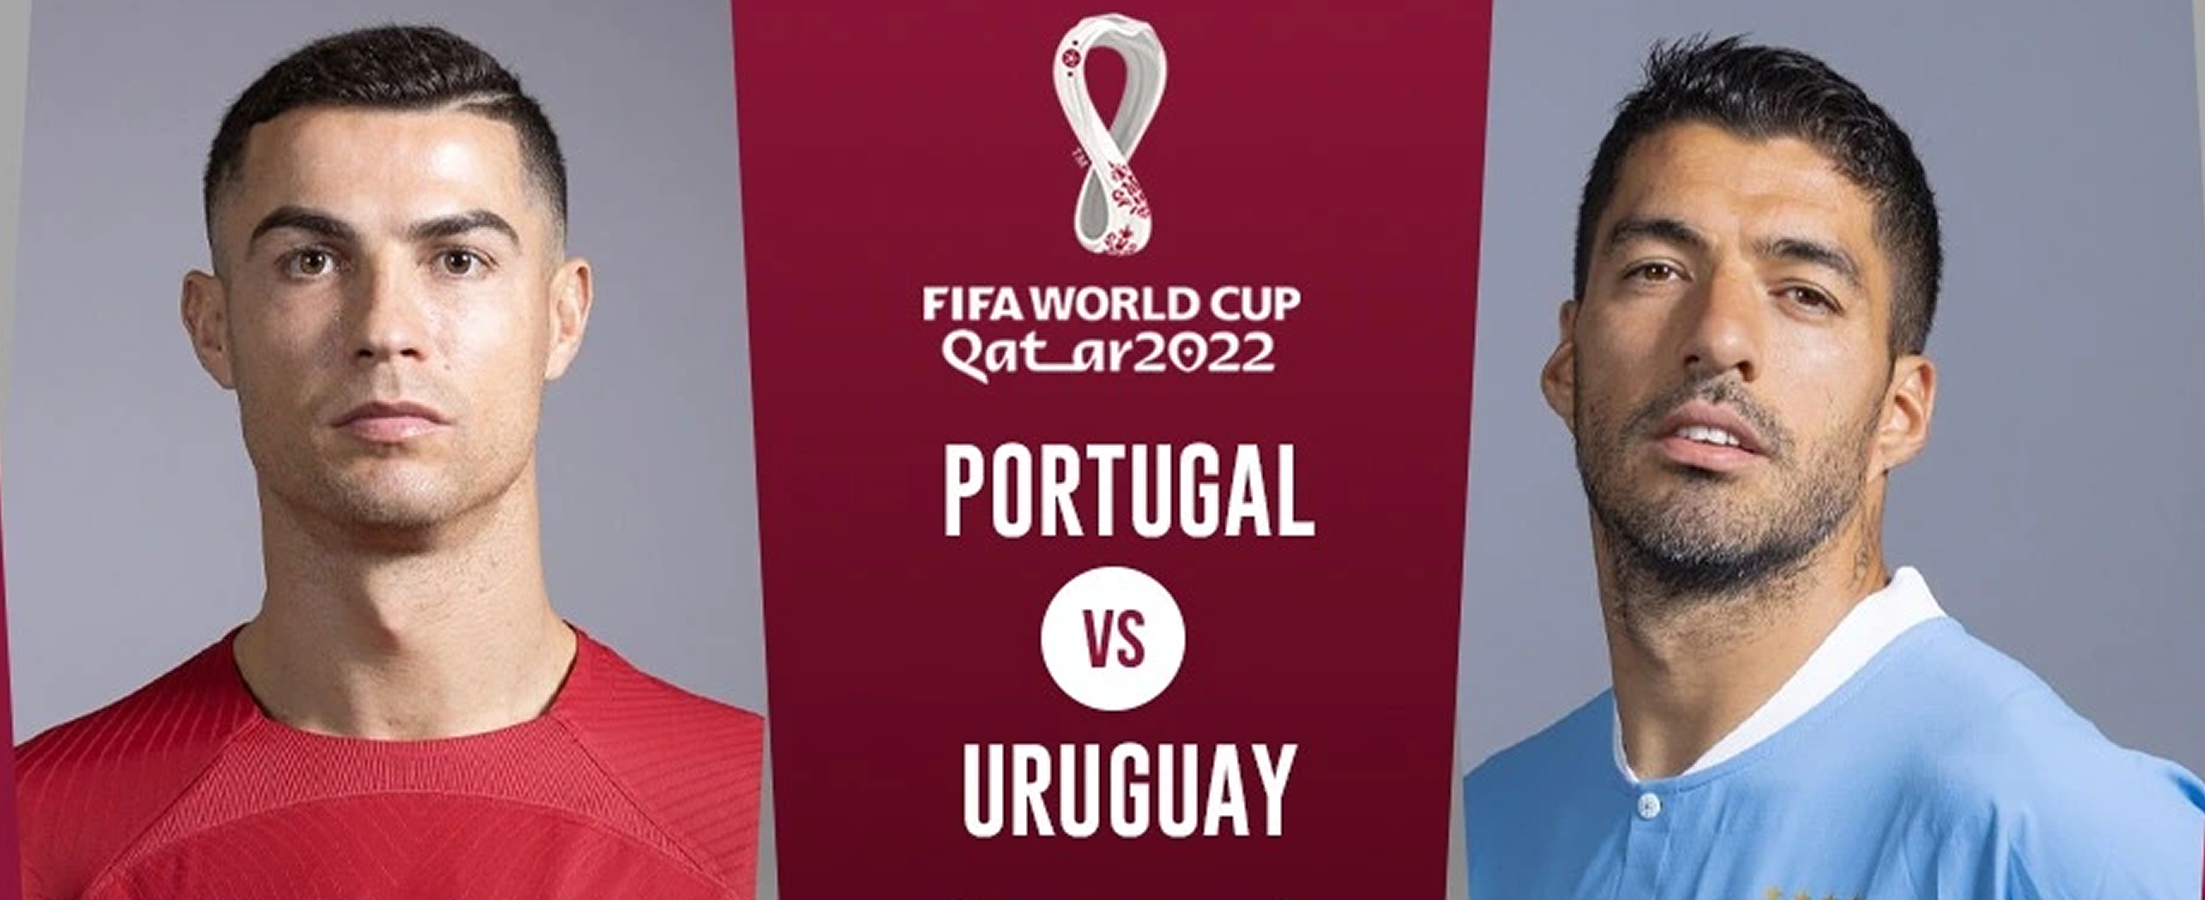 ฟุตบอลโลก 2022 รอบแบ่งกลุ่ม นัดที่ 2 ระหว่าง Portugal vs Uruguay